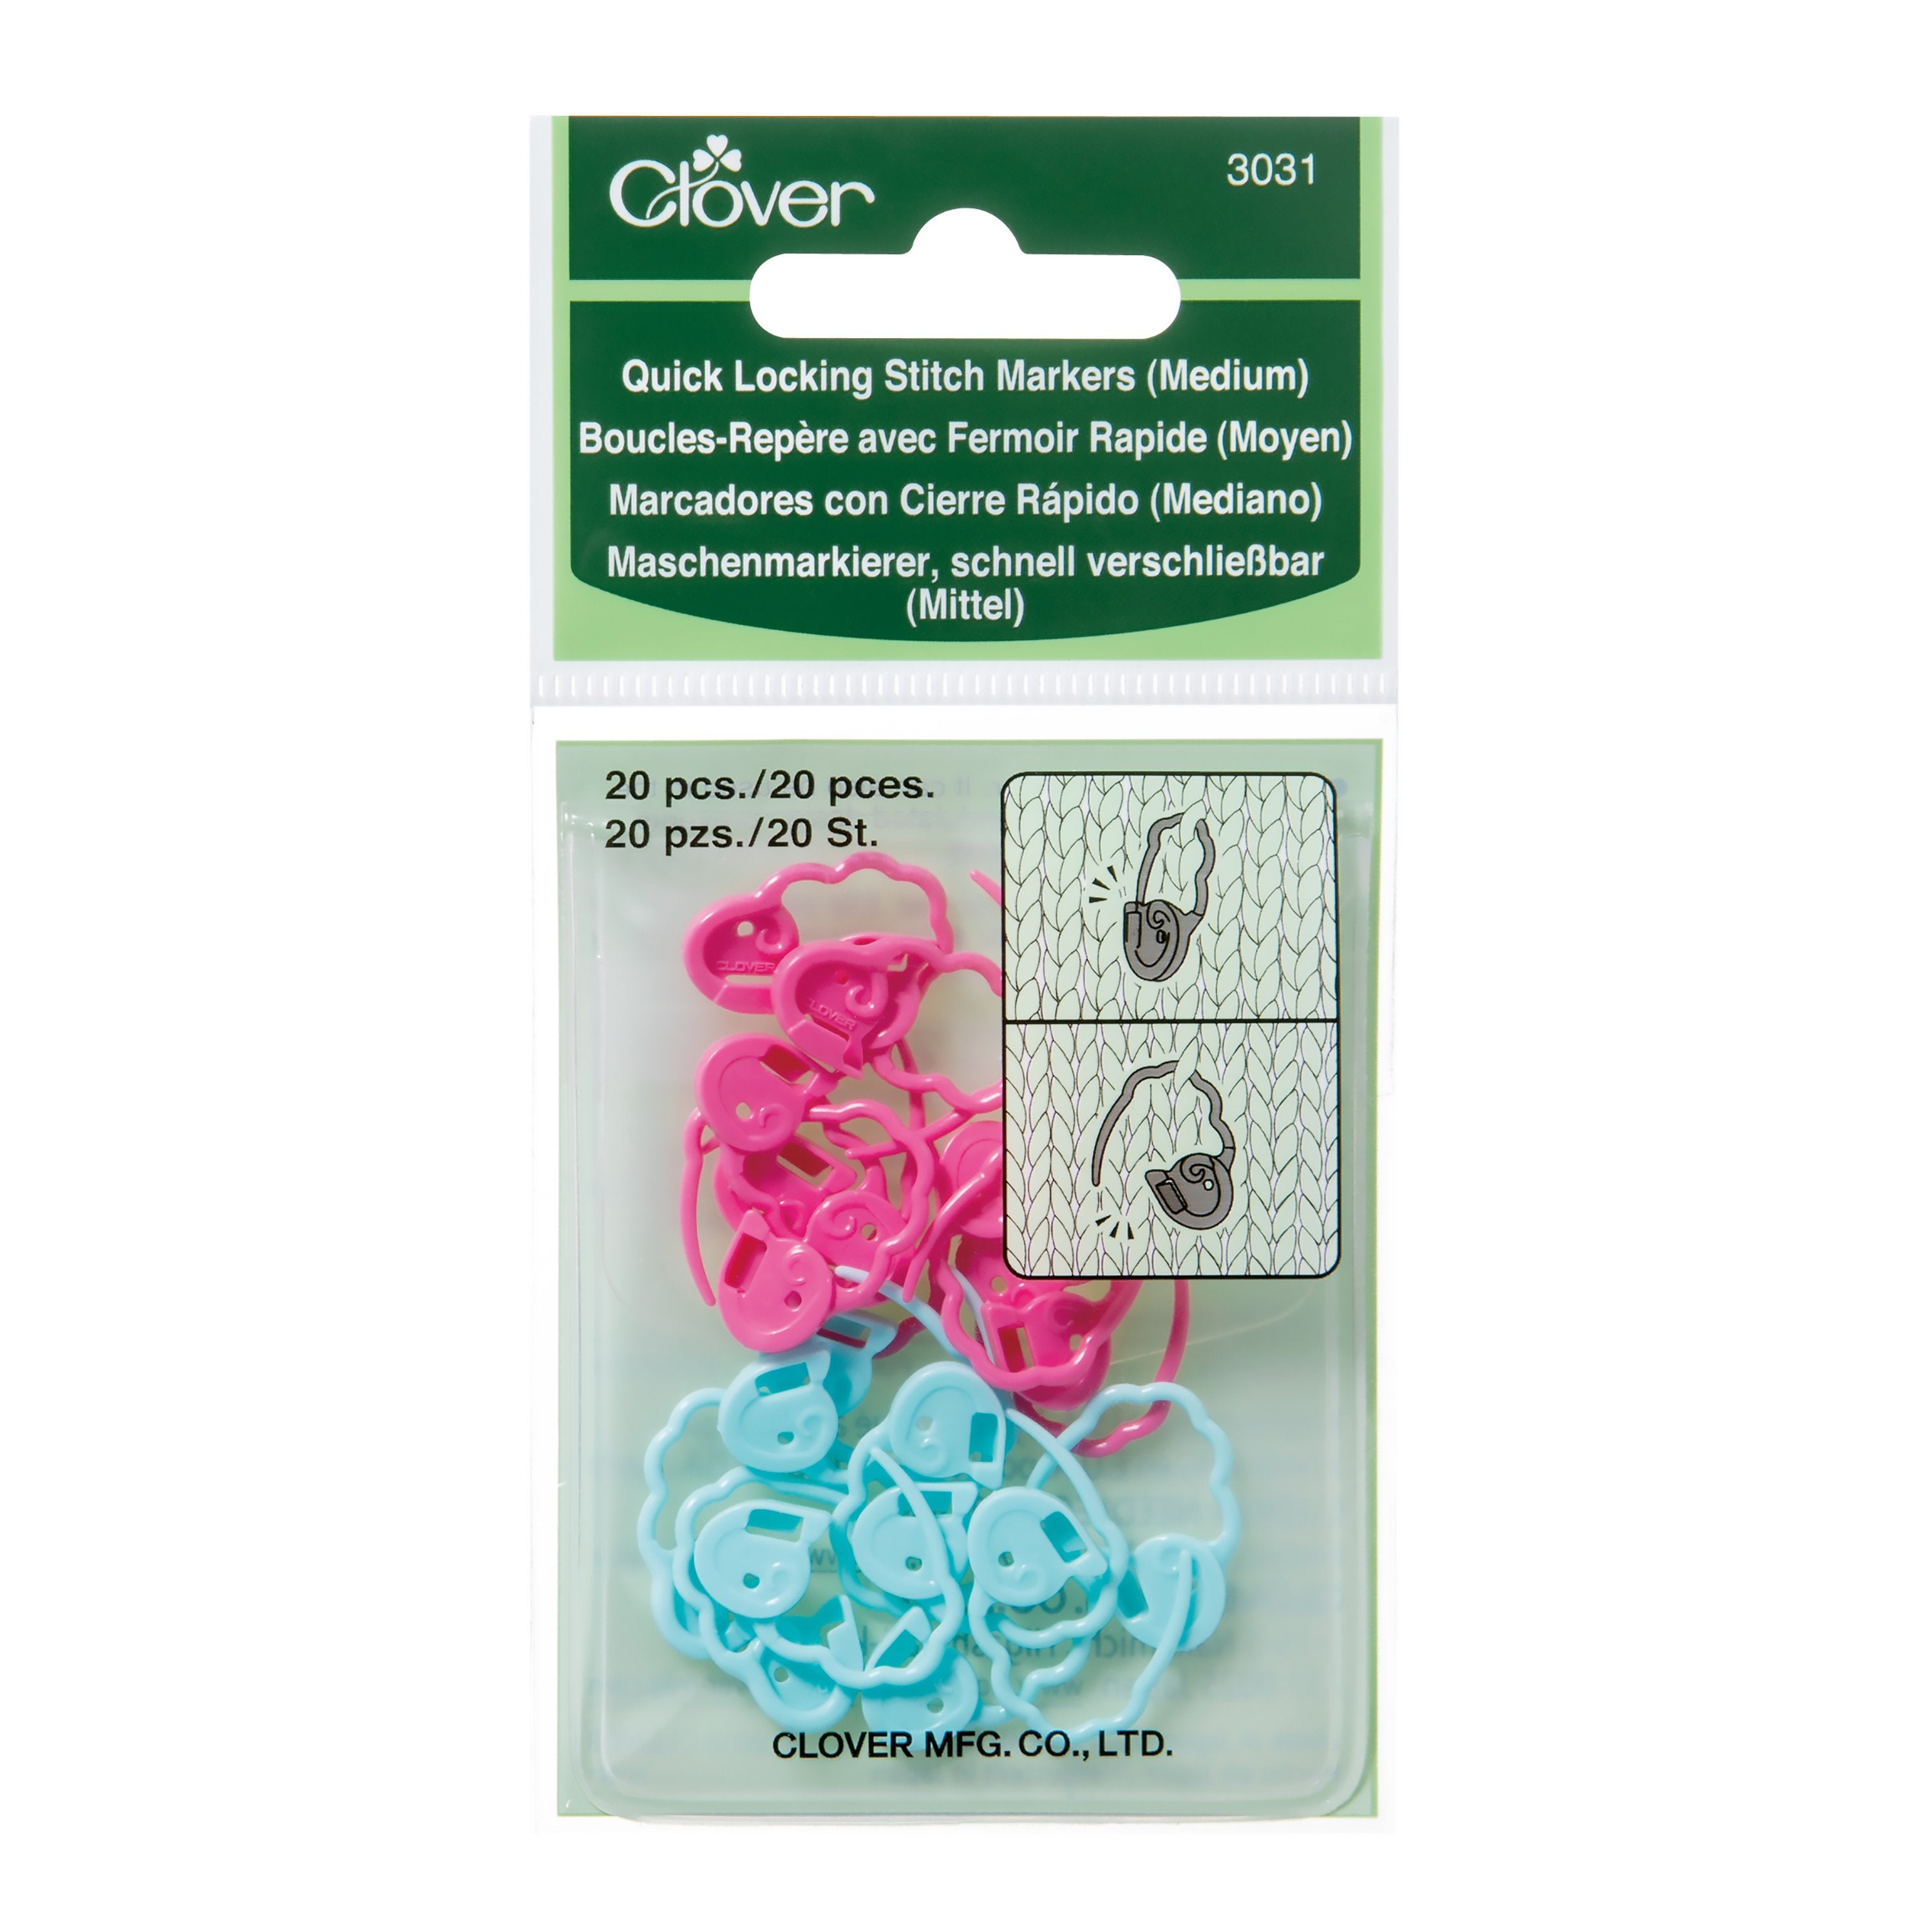 Clover Quick Locking Stitch Marker Set